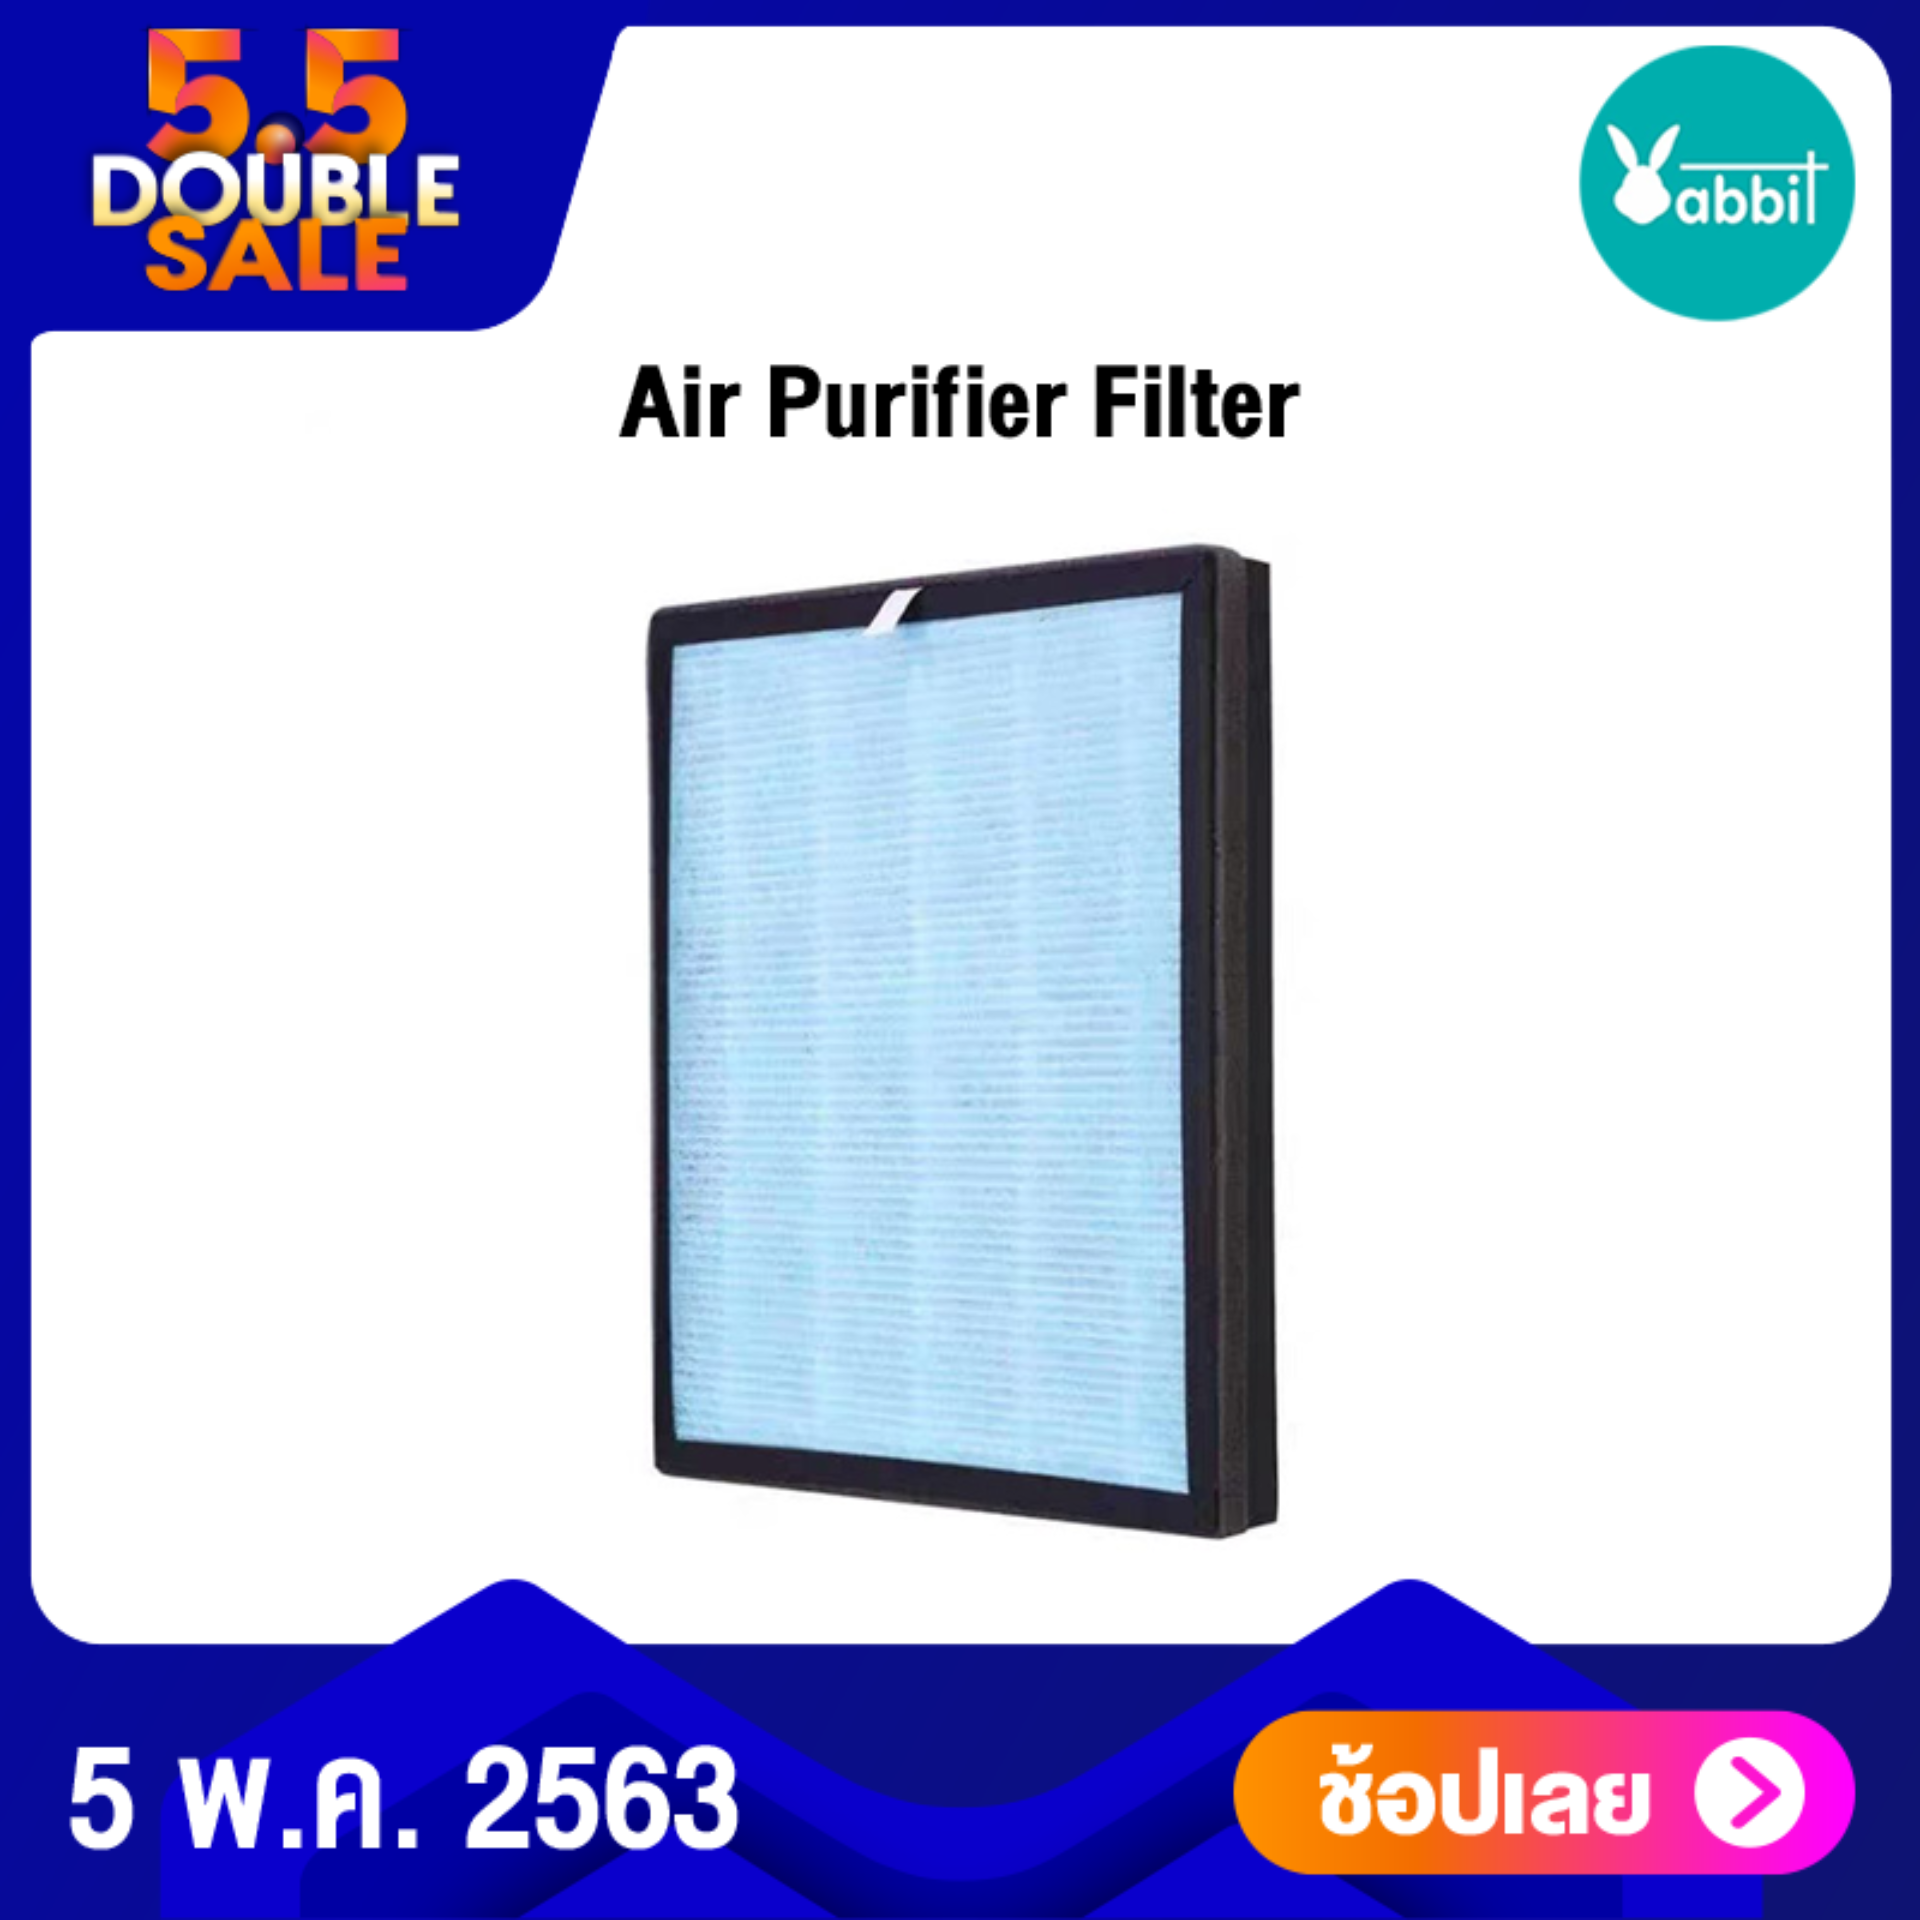 ไส้กรองเครื่องฟอก Air Purifier Filter For Huamai HM-882 Huamai HM-885 and Huamai HM-886